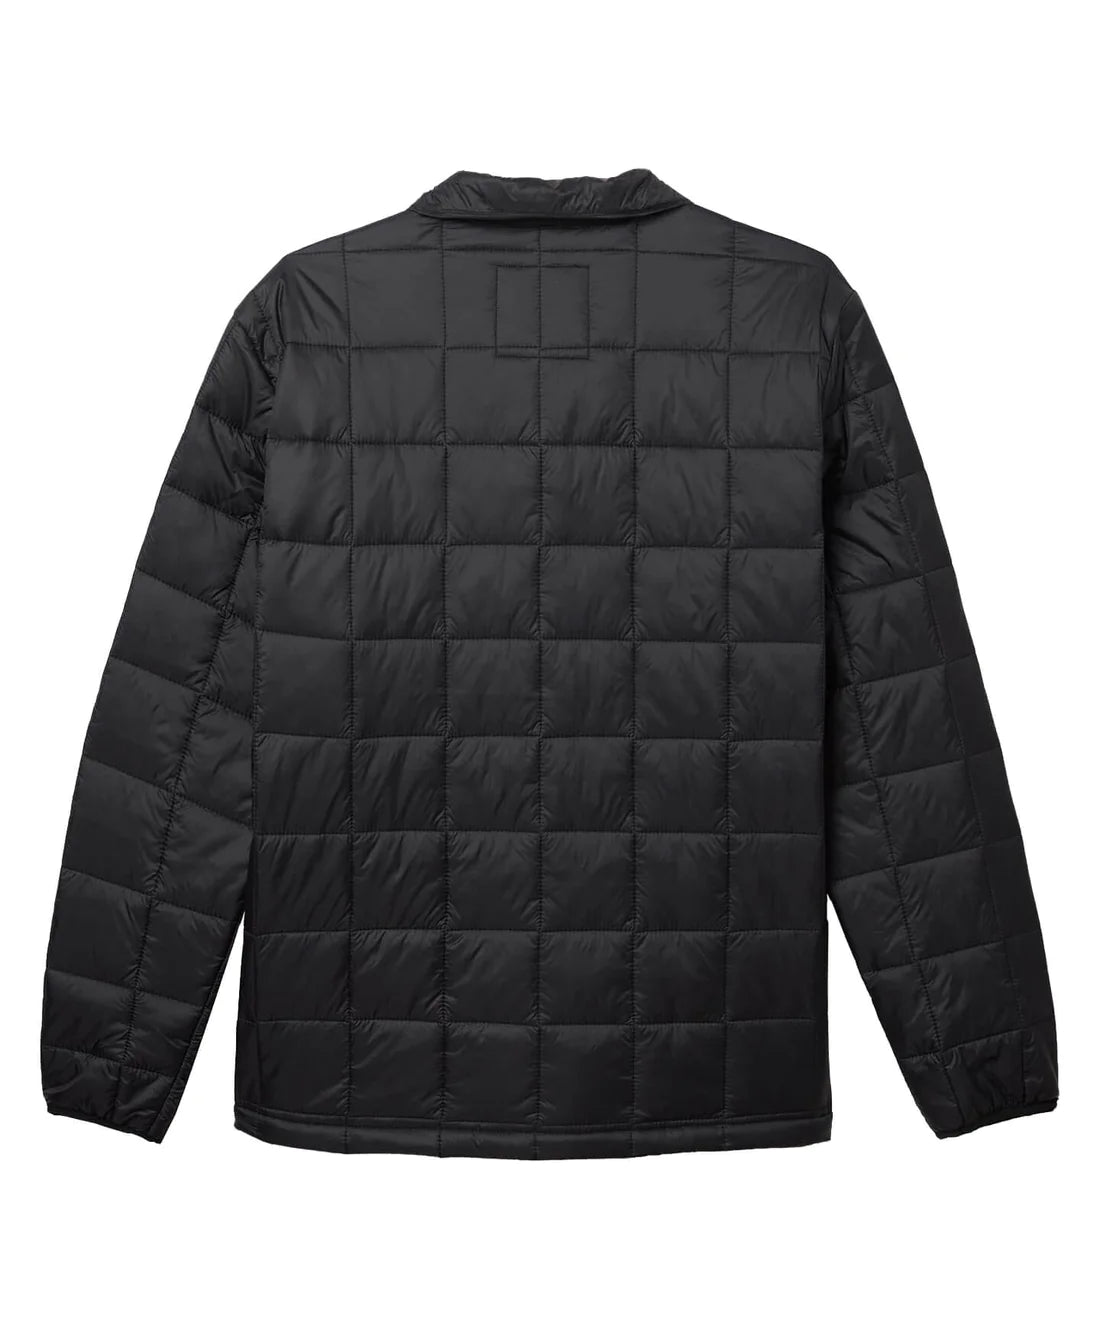 O'NEILL - TRVLR Away Packable Jacket - Black